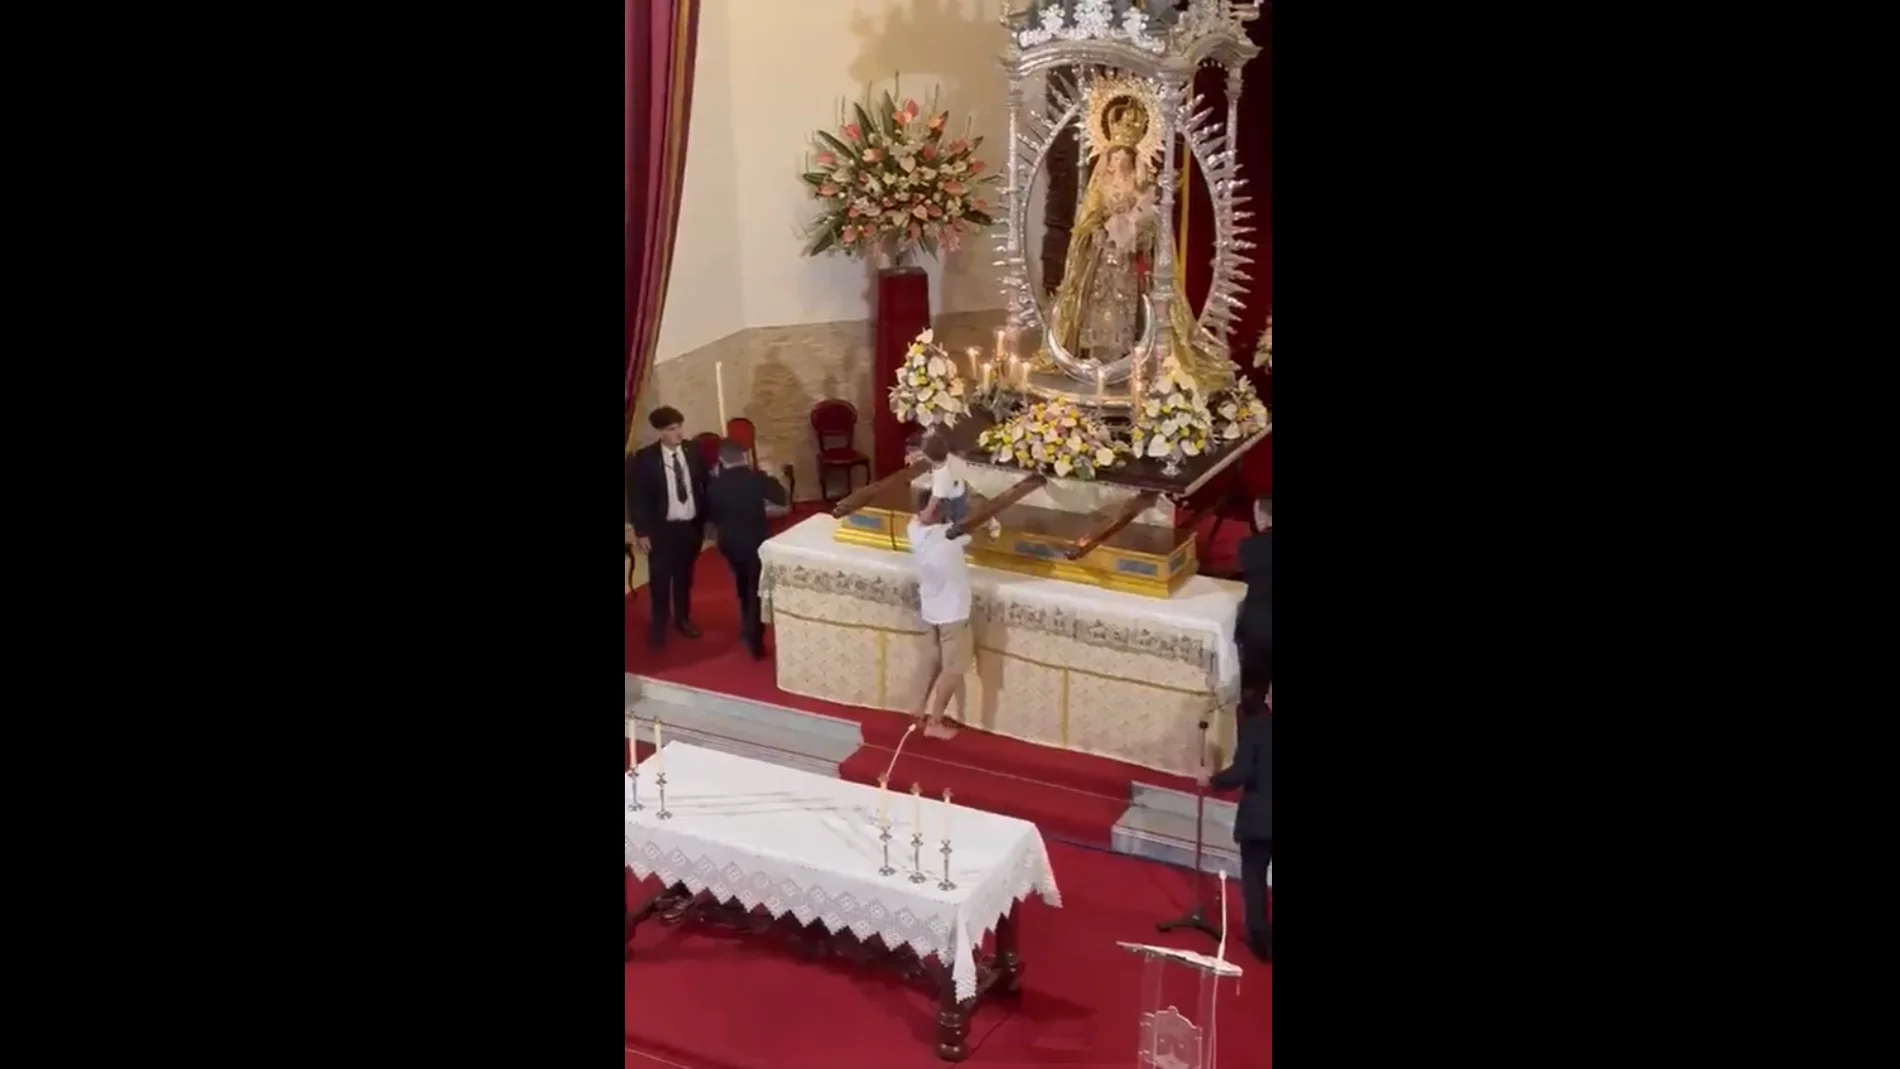 Un hombre irrumpe corriendo durante una misa y sube a un niño junto de la virgen en una iglesia de Tenerife